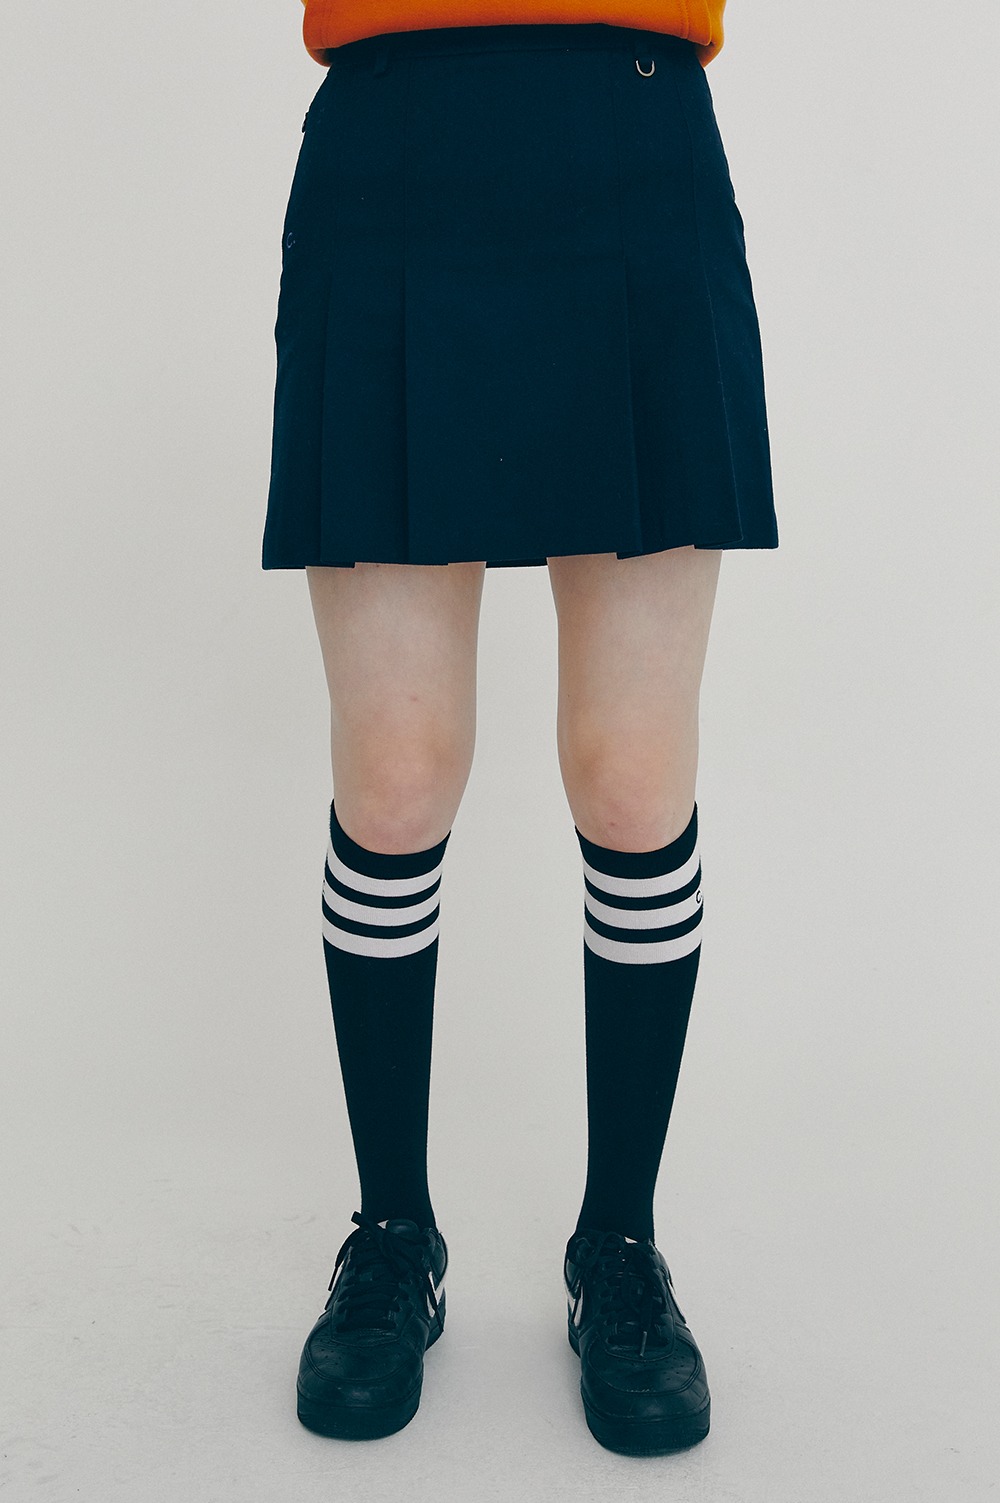 clove - [FW21 clove] Side Pleated Skirt (Navy)